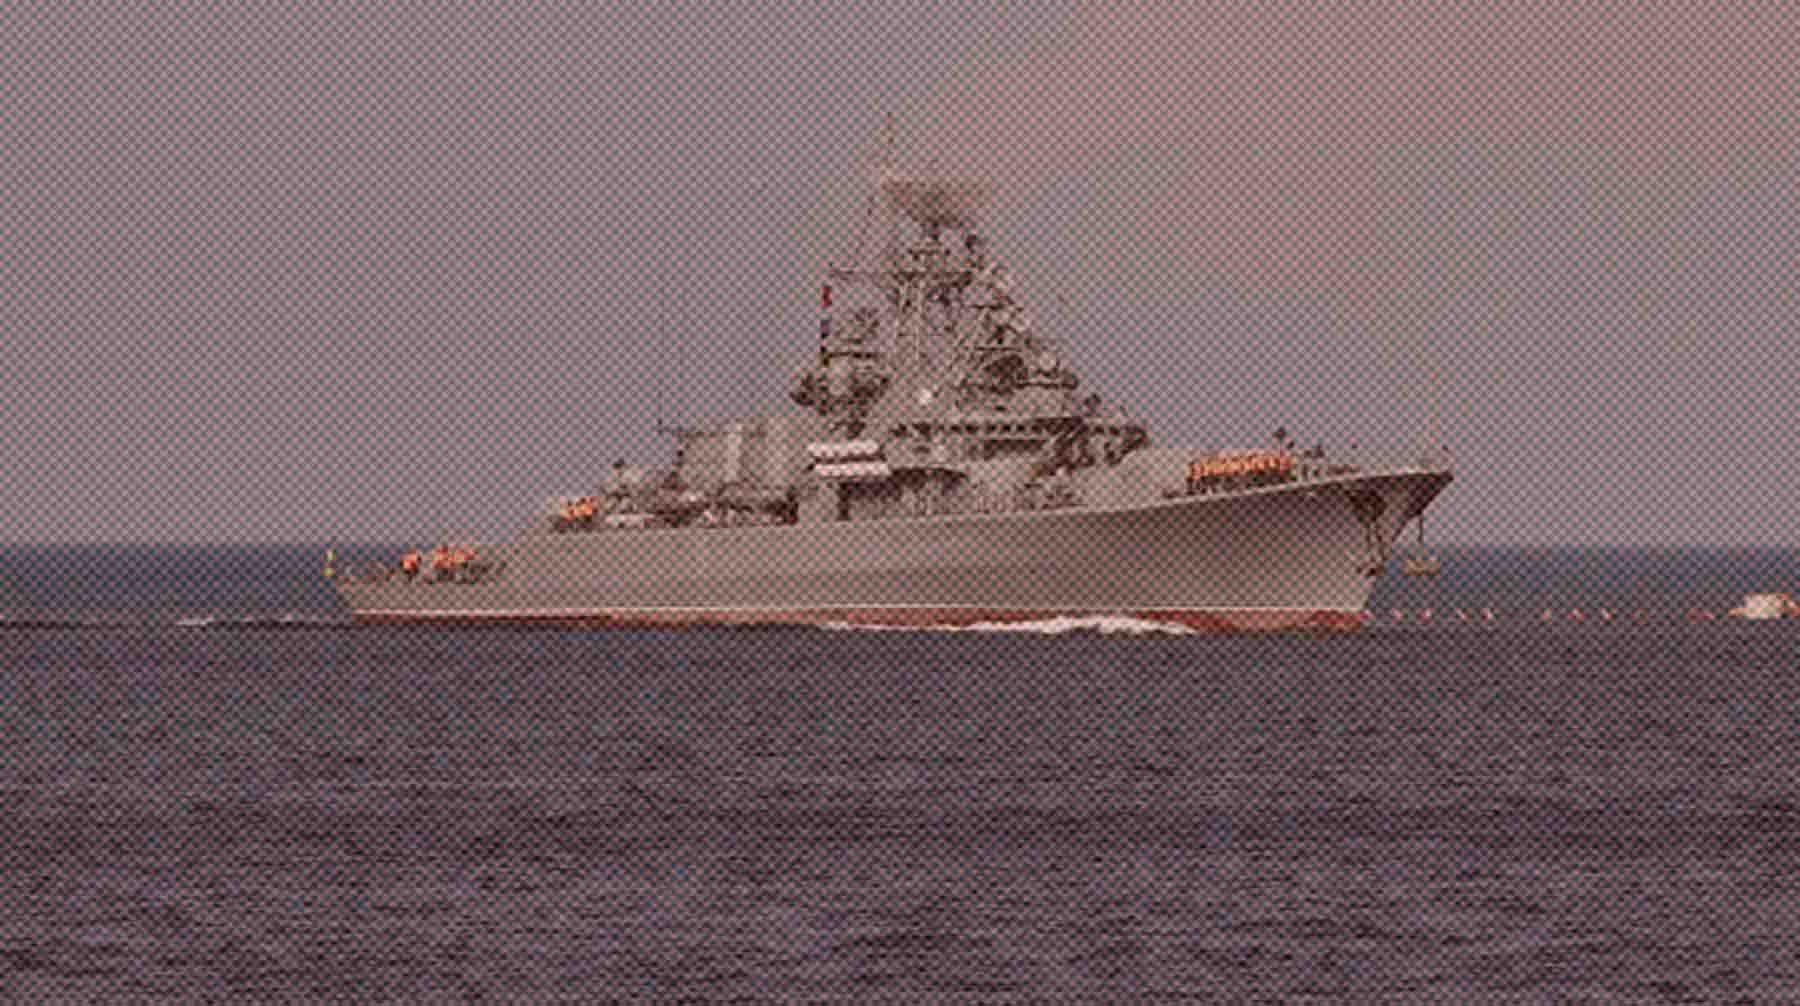 От взрывов дронов в нескольких зданиях выбило стекла, сообщил губернатор Развожаев Военный корабль Черноморского флота РФ в Севастопольской бухте.